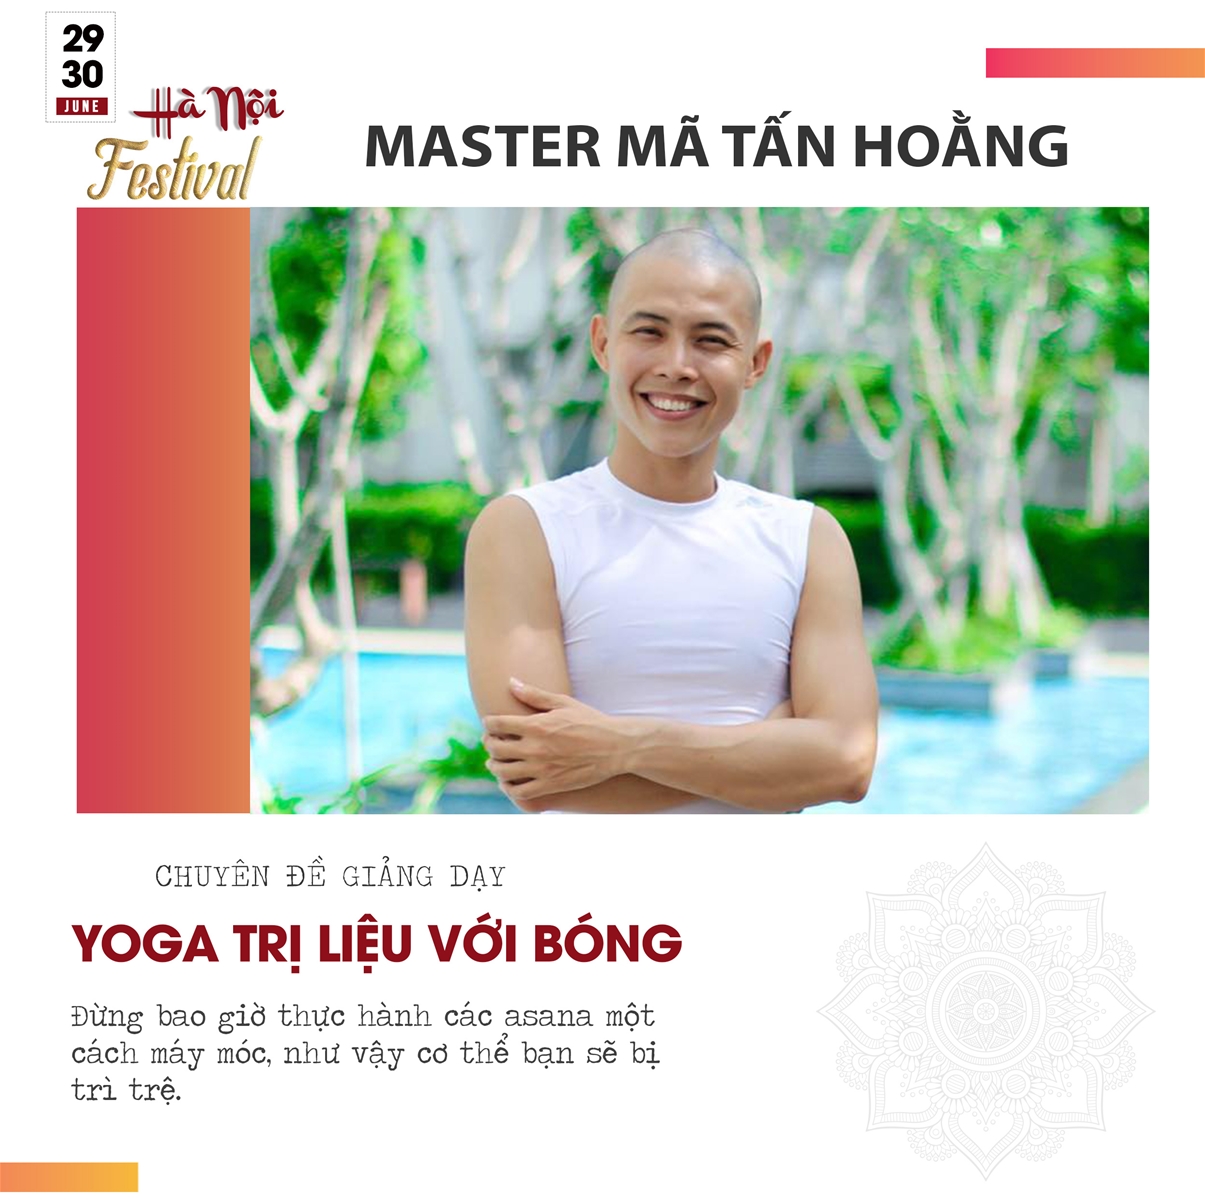 ‘Dàn sao’ giảng viên hàng đầu thế giới và Việt Nam quy tụ tại Hà Nội Yoga, Fitness, Zumba Dance Festival 2019